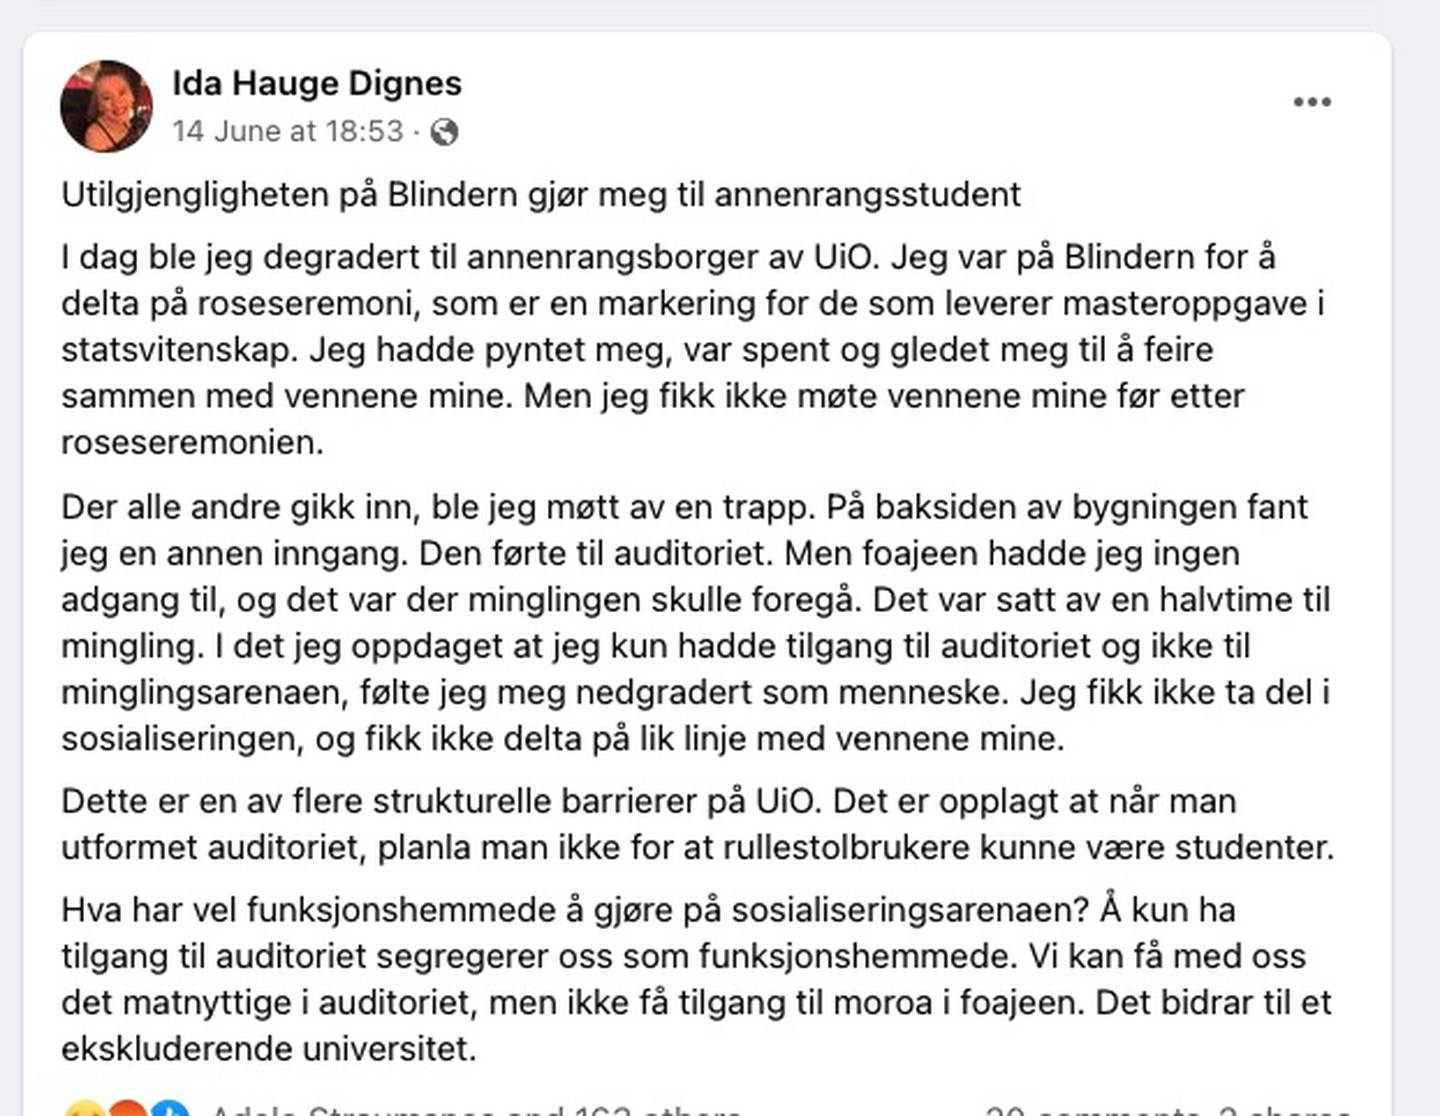 Facebook-posten Ida Hauge Dignes publiserte etter roseseremonien på Blindern har skapt engasjement.